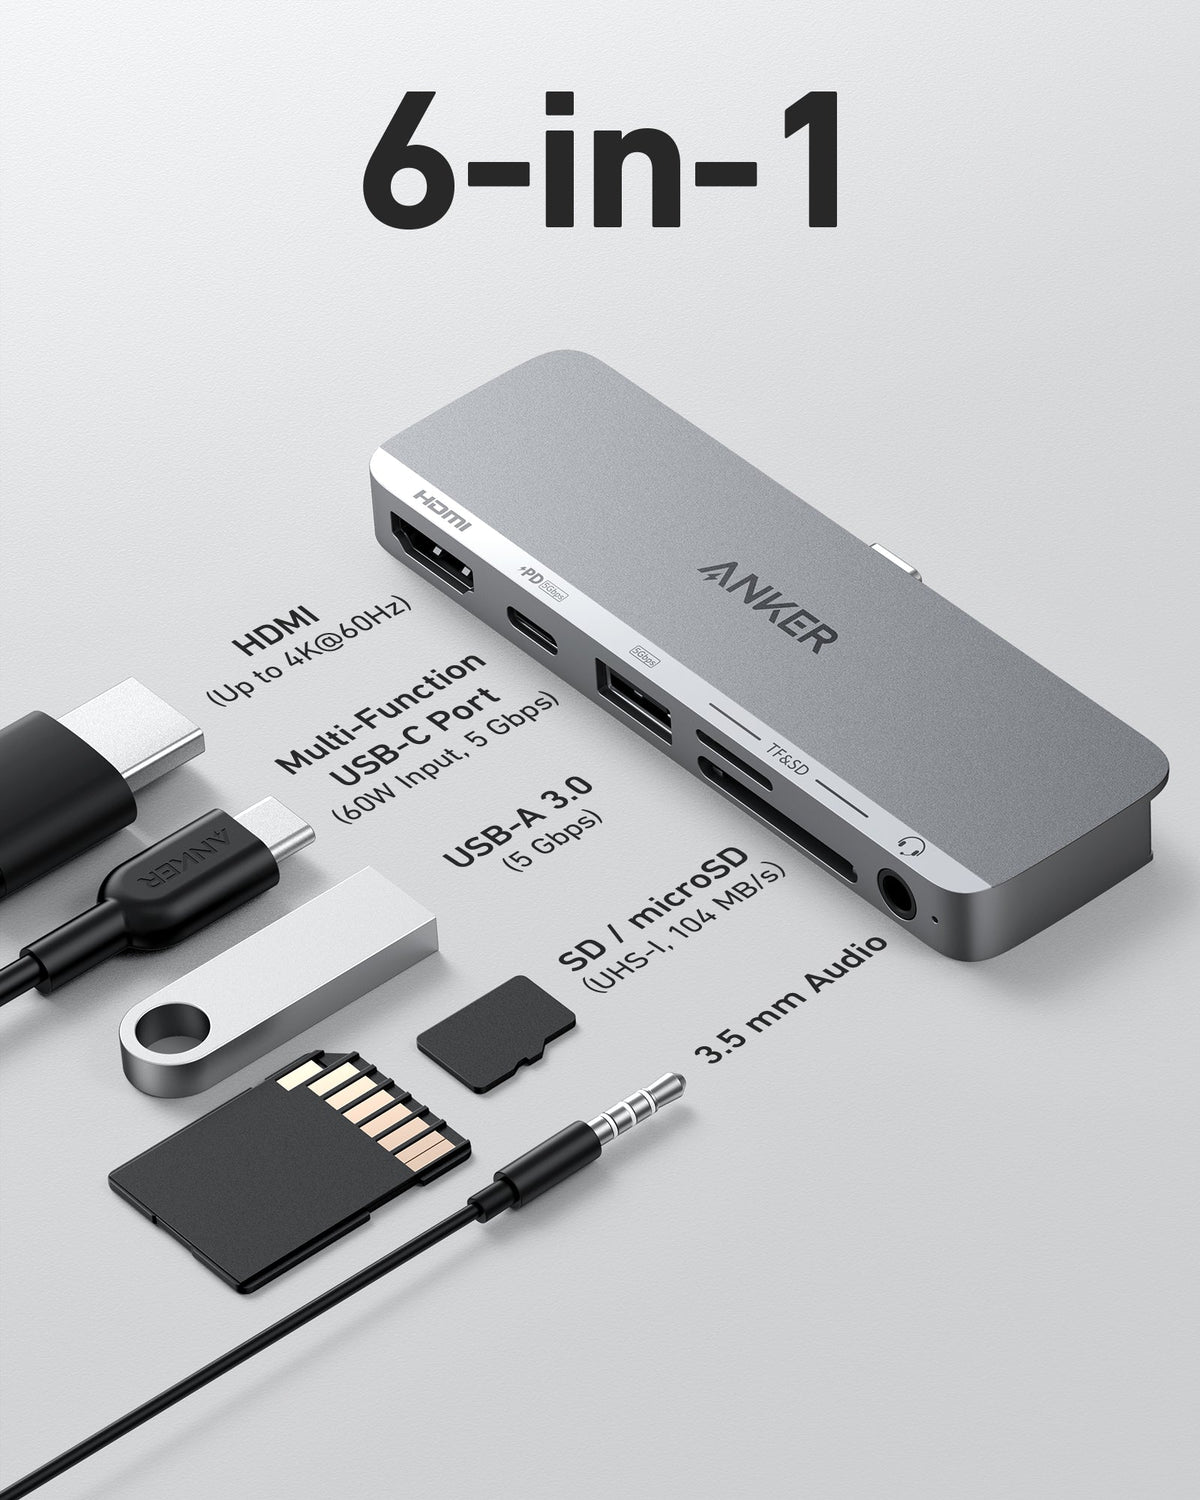 Anker &lt;b&gt;541&lt;/b&gt; USB-C Hub (6-in-1, for iPad)